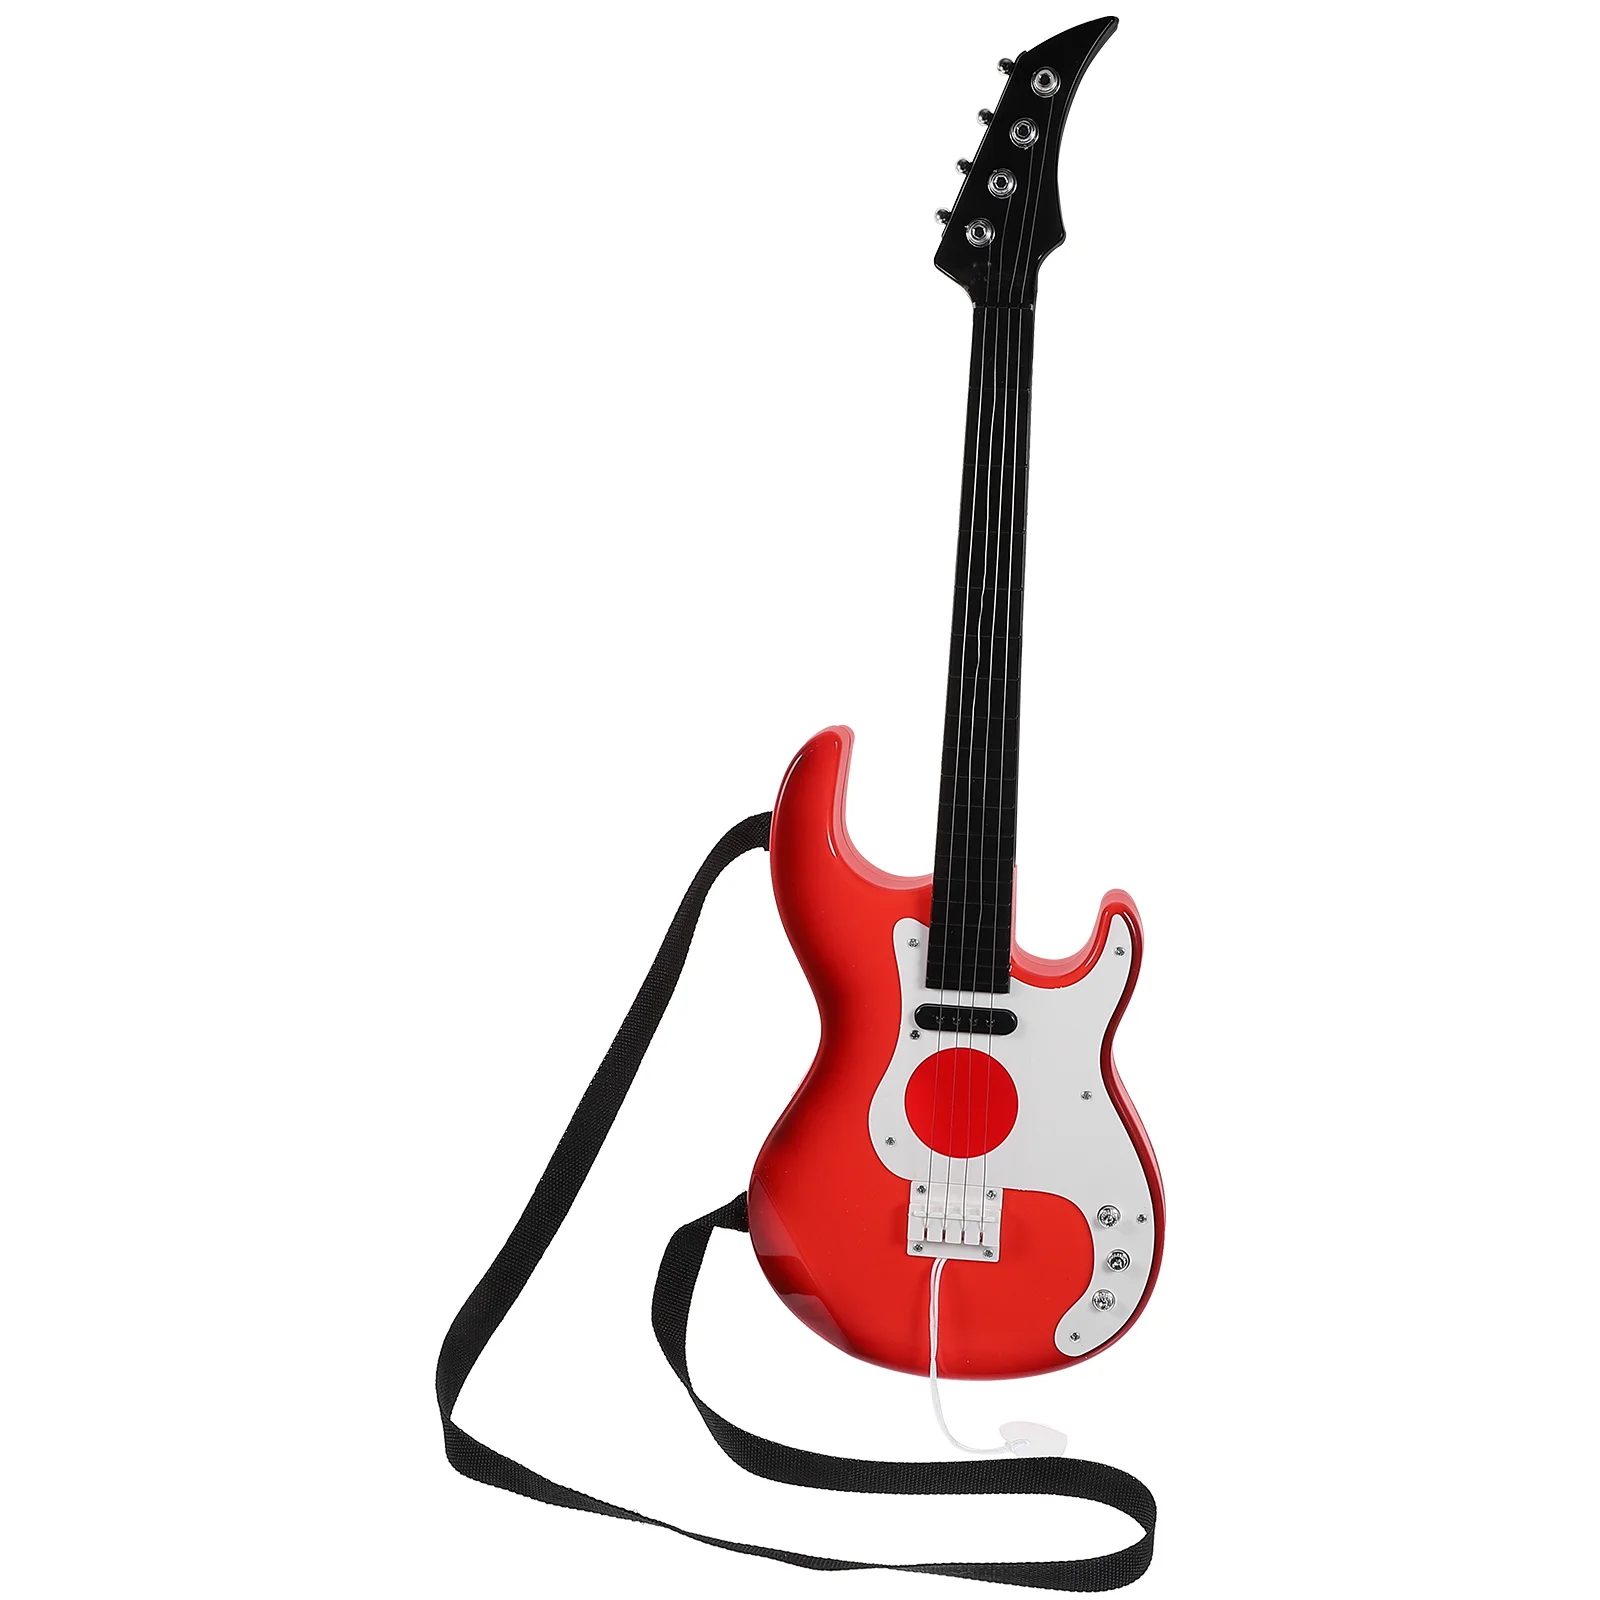 

Игрушечные Струны для гитары, игрушечный инструмент для ранней музыки, обучающий инструмент, игрушка